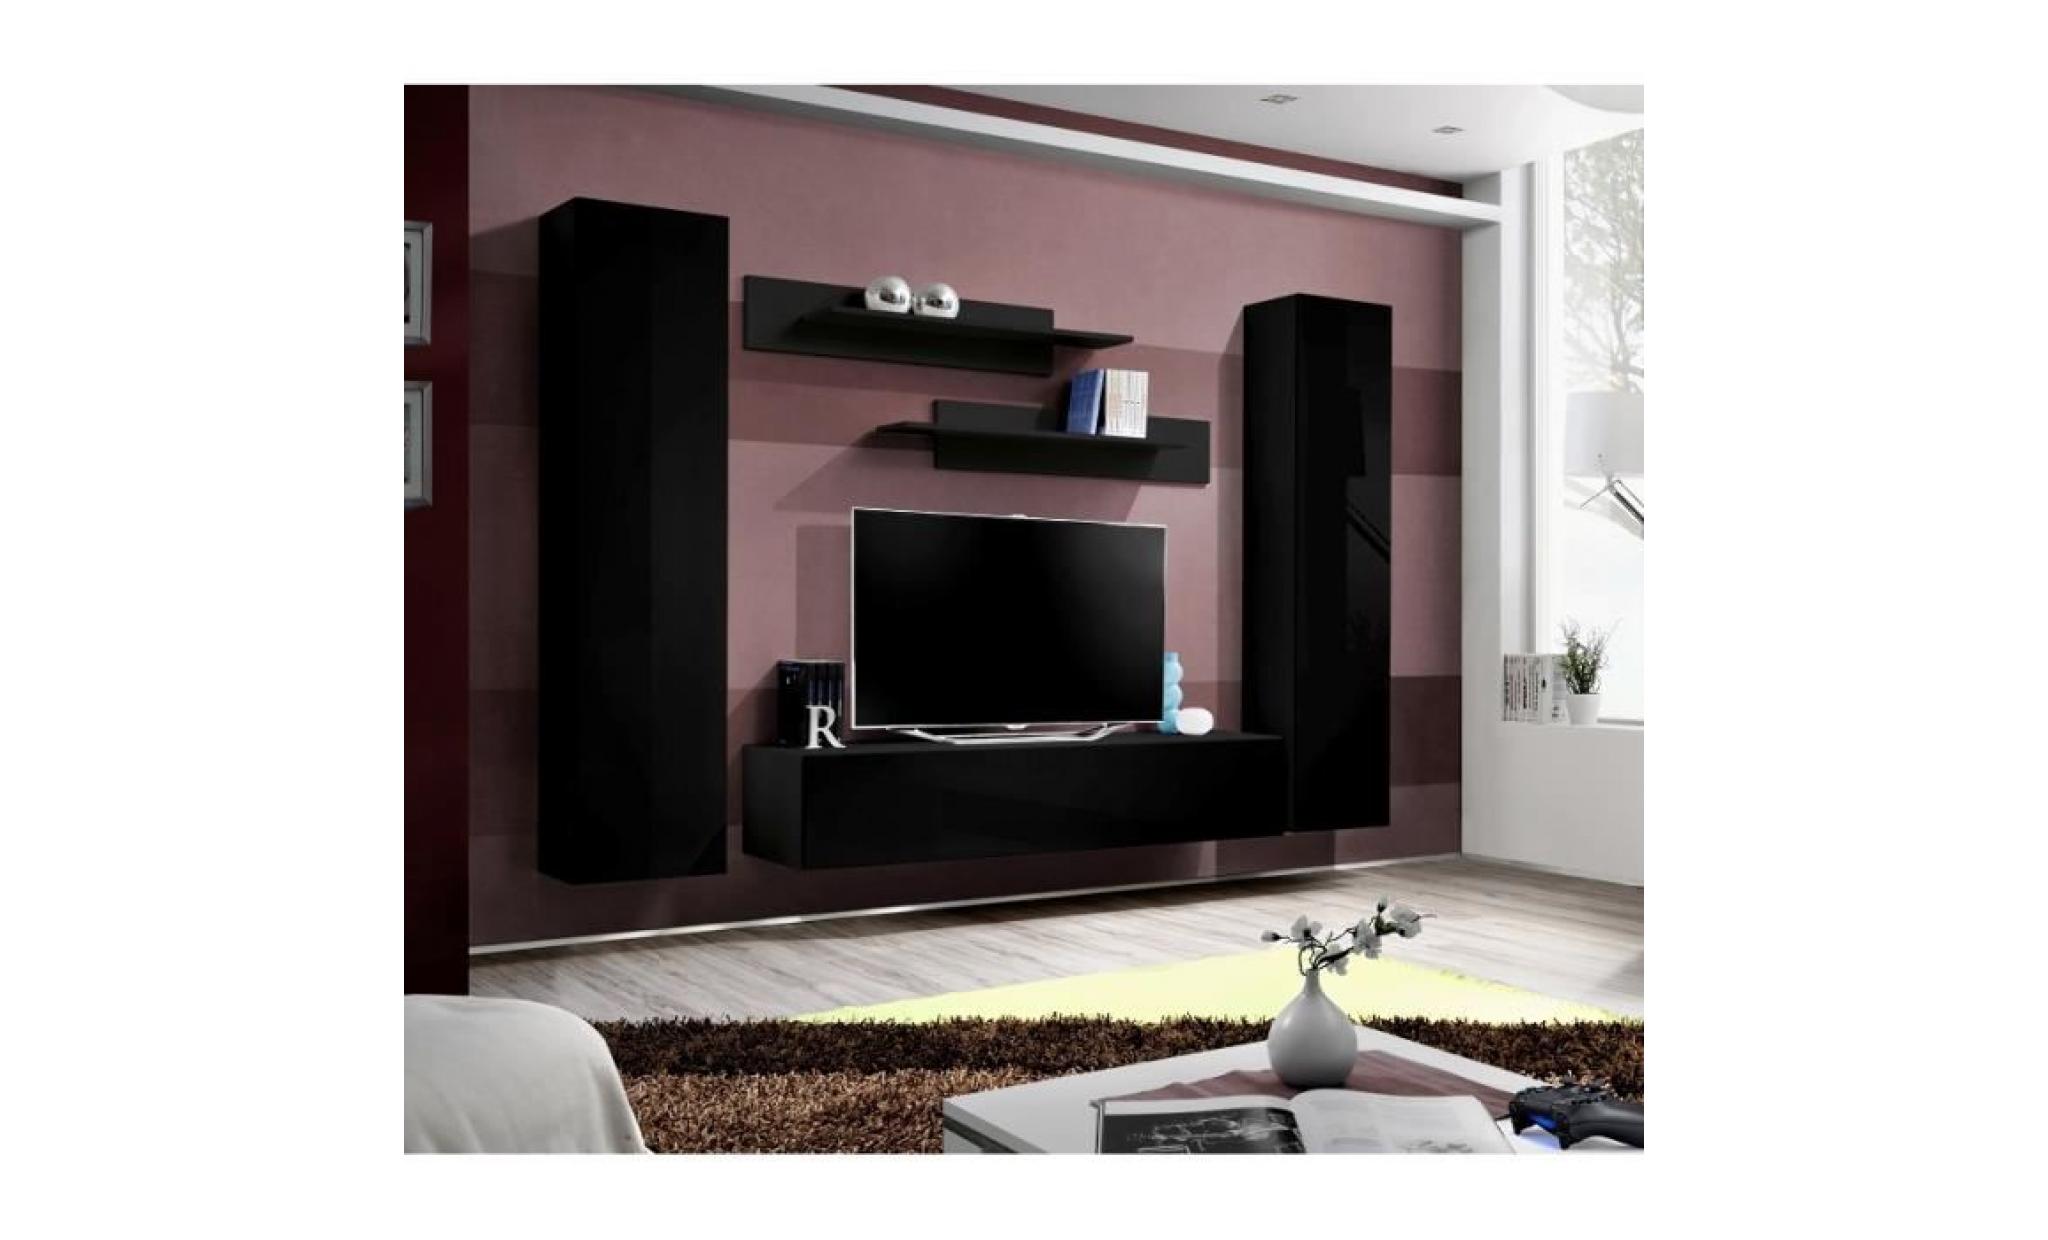 price factory   meuble tv fly a1 design, coloris noir brillant. meuble suspendu moderne et tendance pour votre salon.